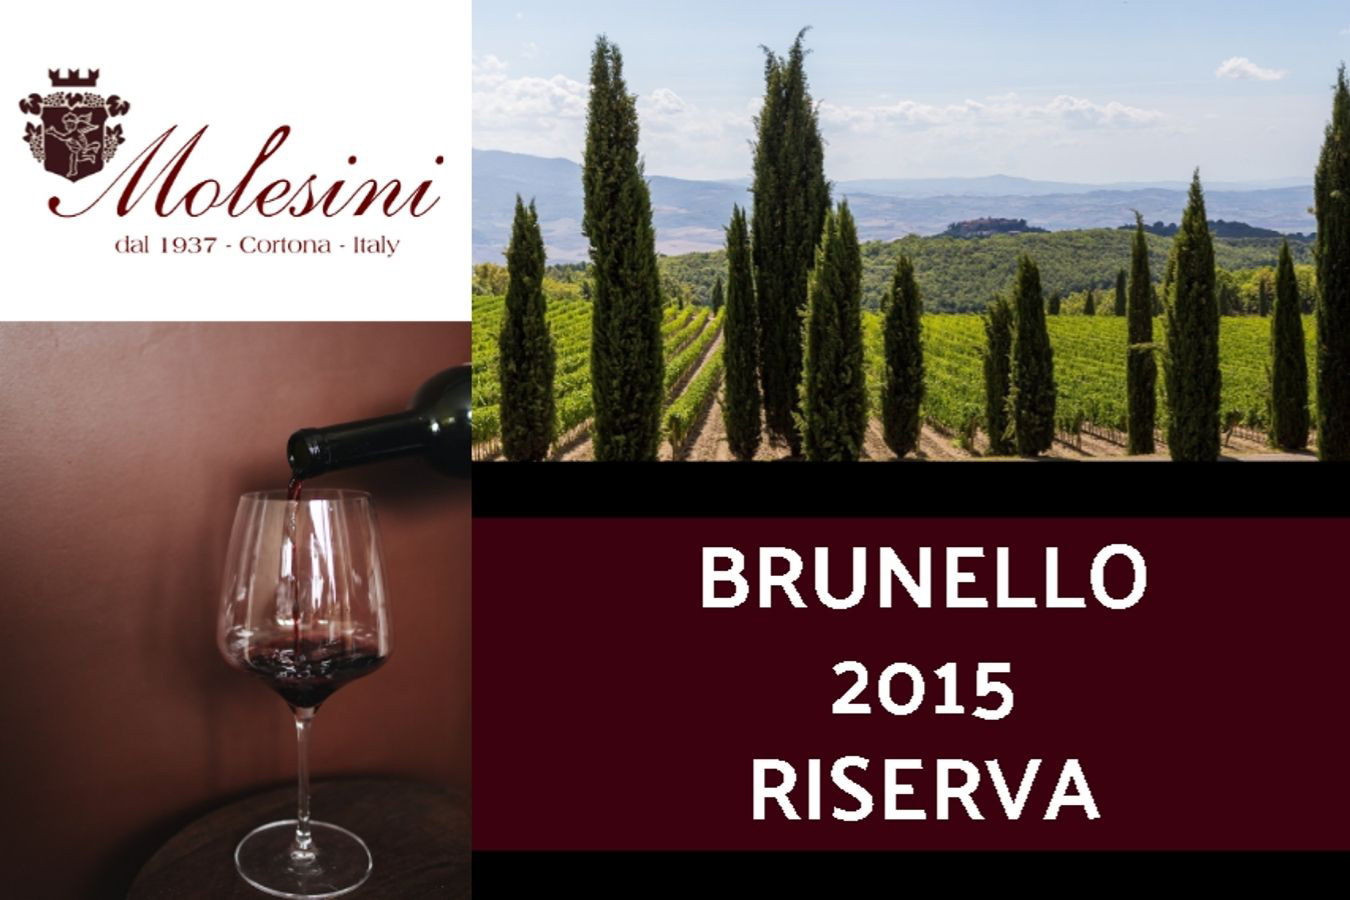 Offerta Brunello 2015 Riserva